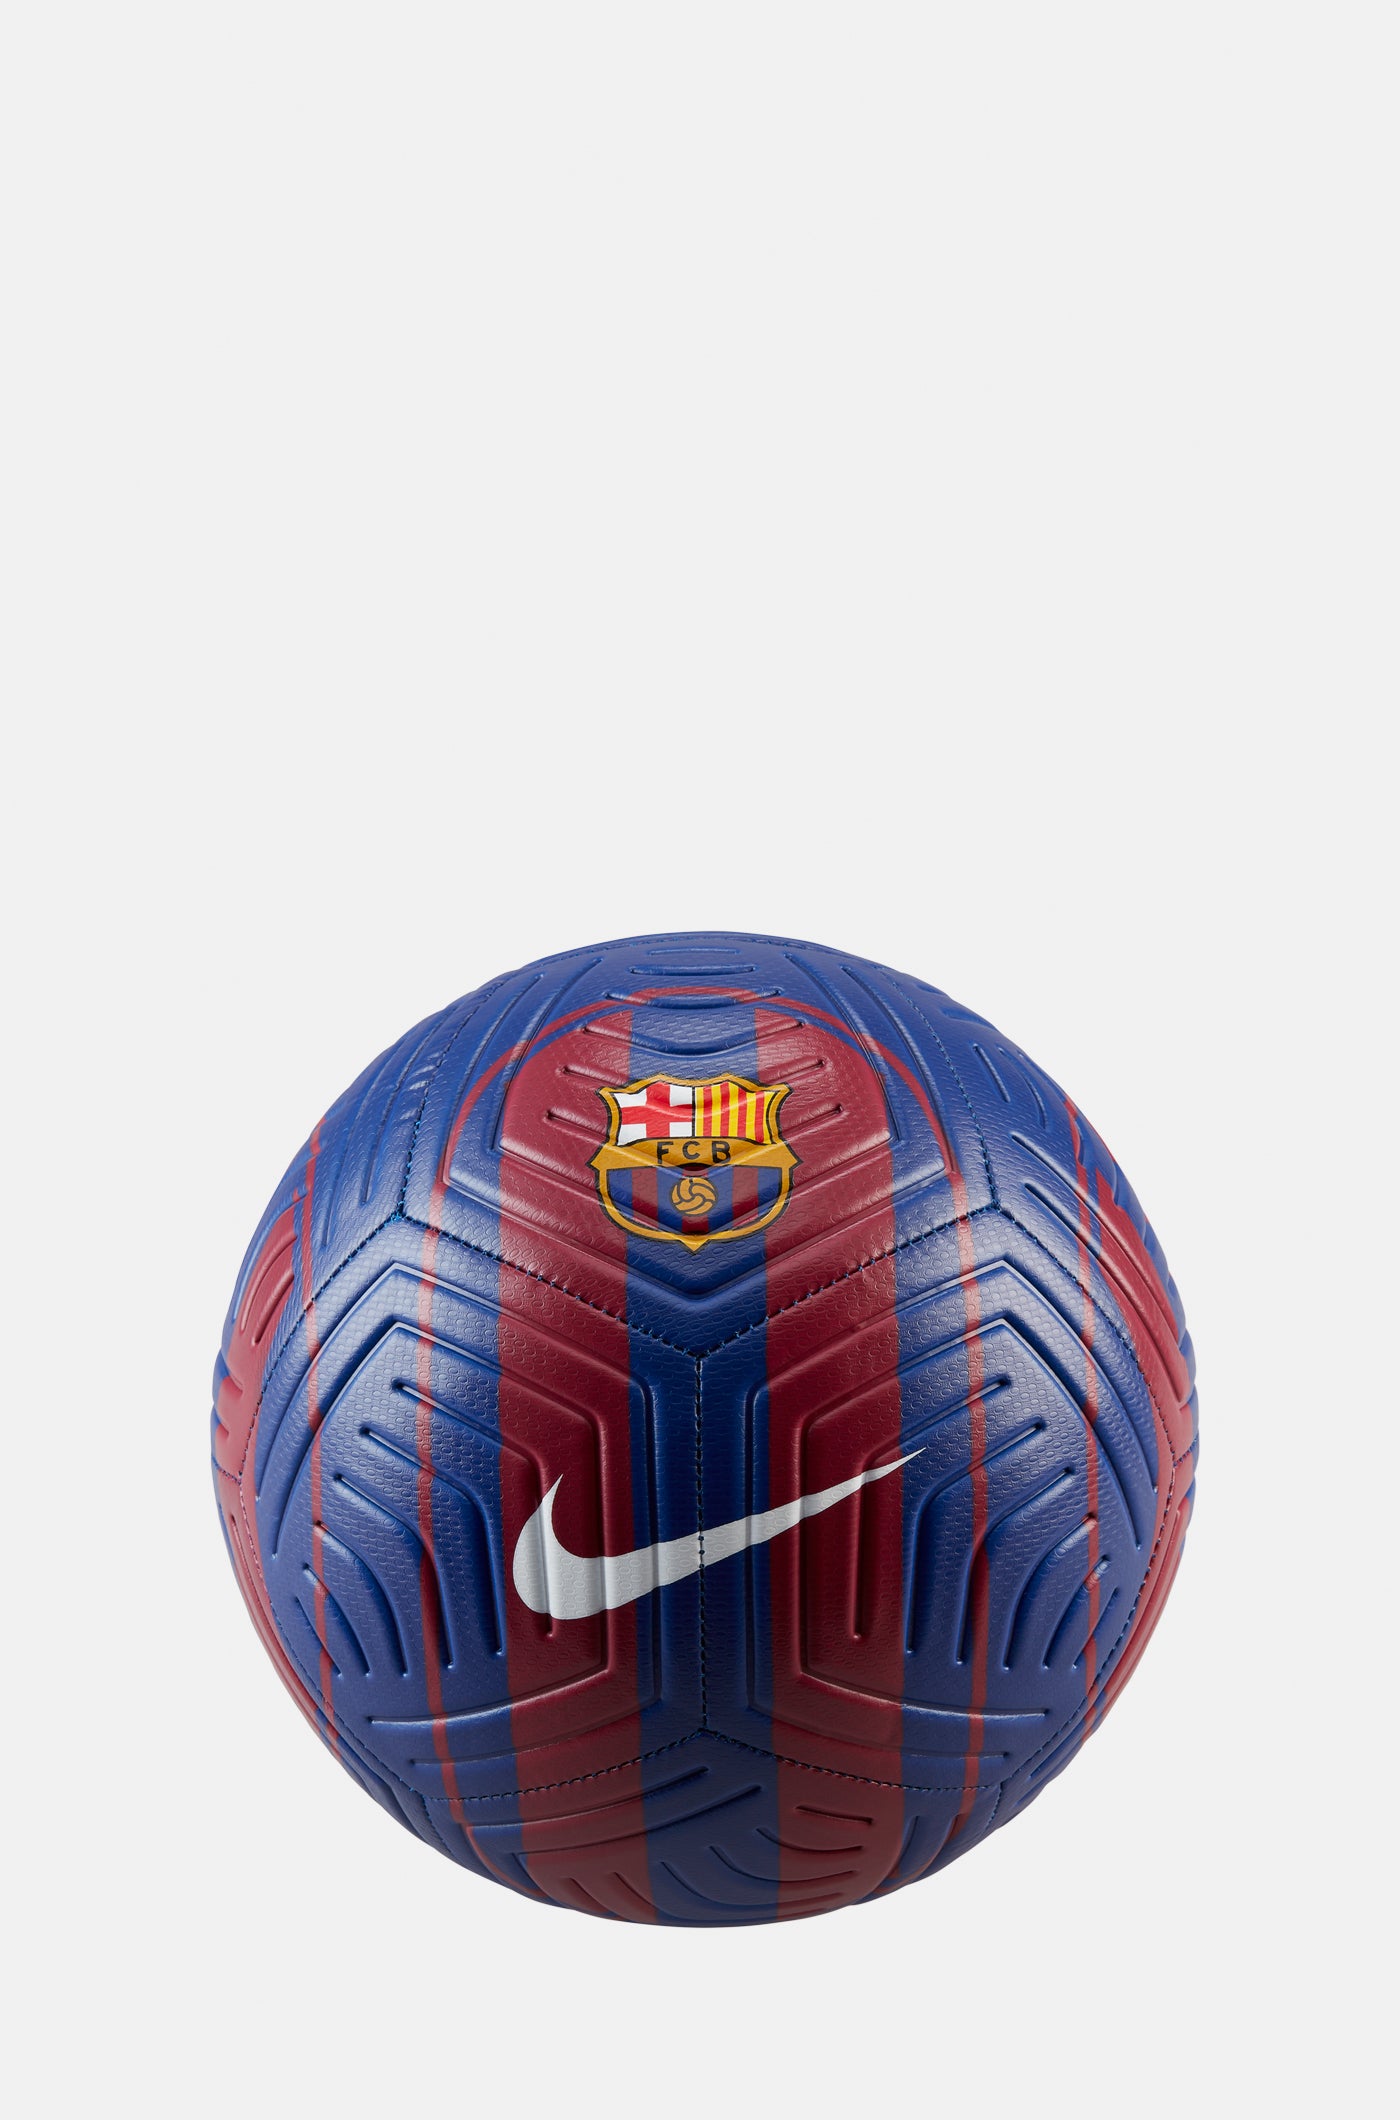 Souvenirs – Barça Official Store Spotify Camp Nou